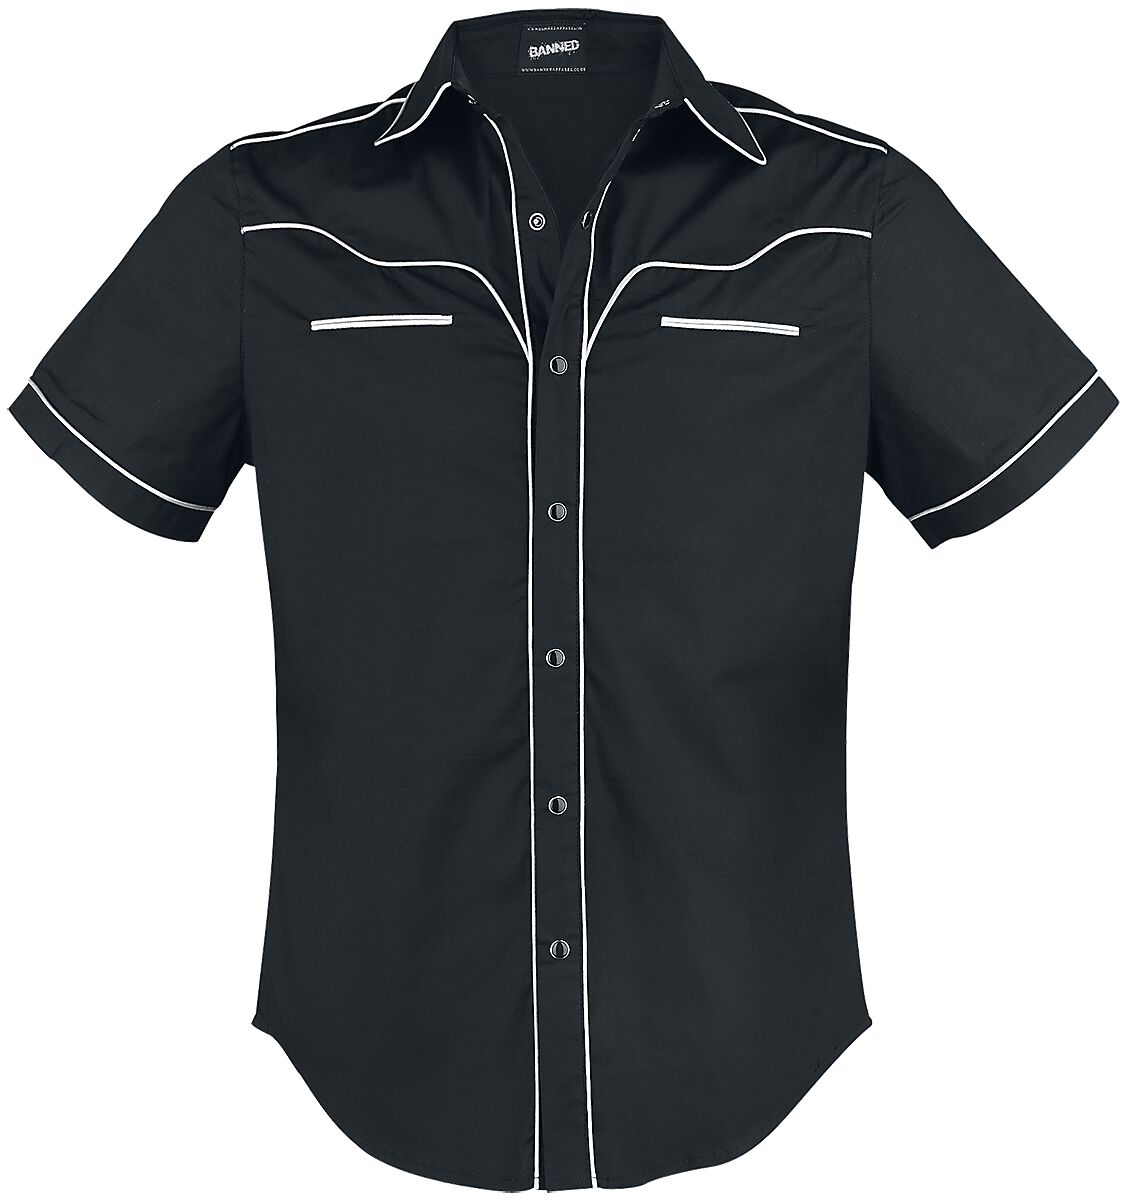 Banned Alternative - Rockabilly Kurzarmhemd - Plain Trim - S bis 5XL - für Männer - Größe 3XL - schwarz/weiß